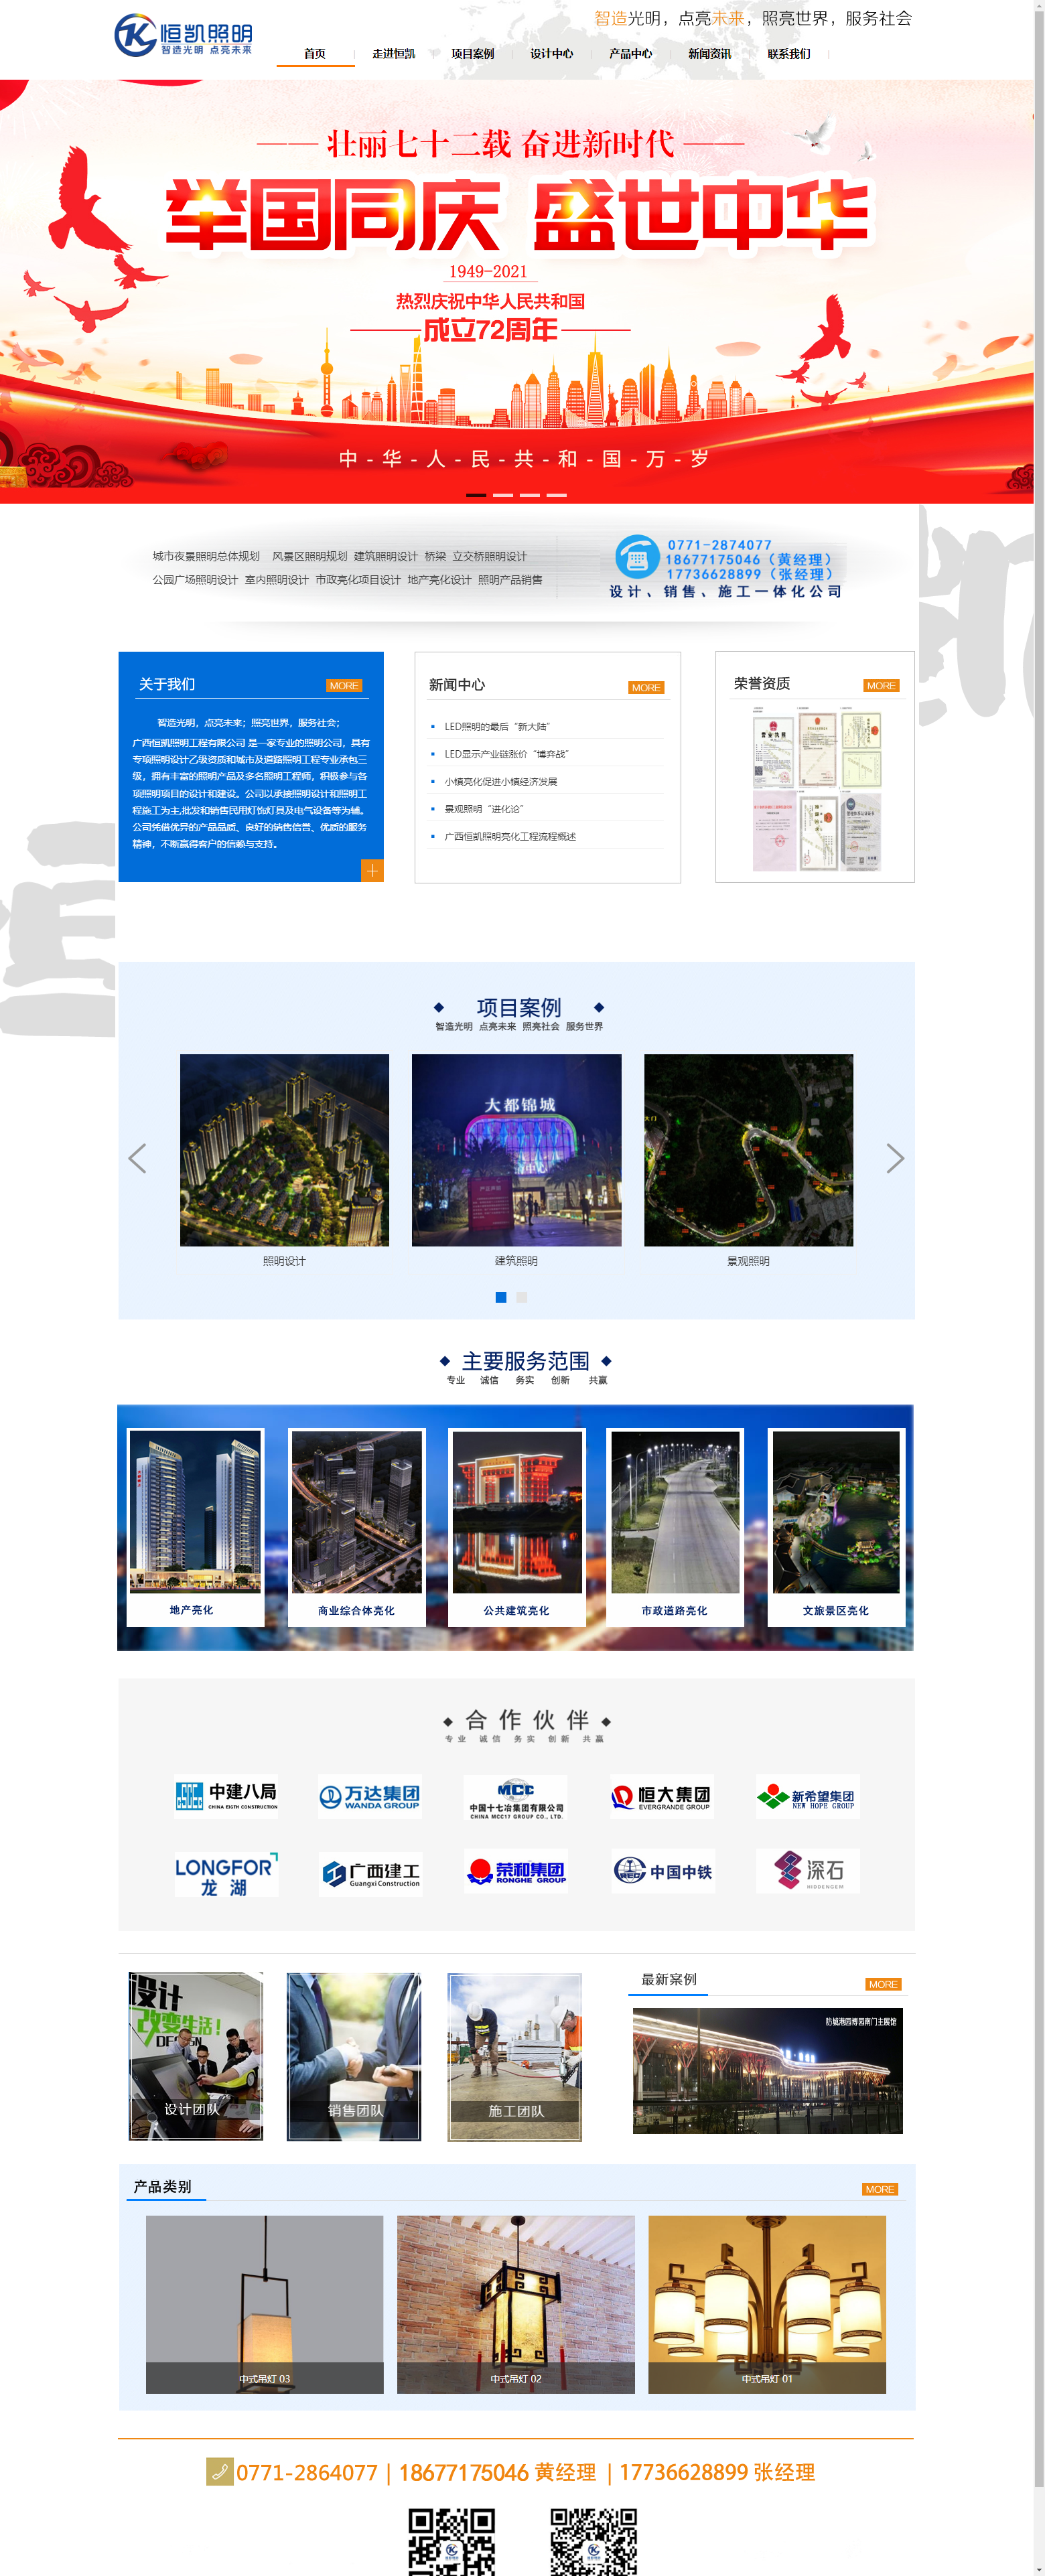 广西恒凯照明工程有限公司网站案例